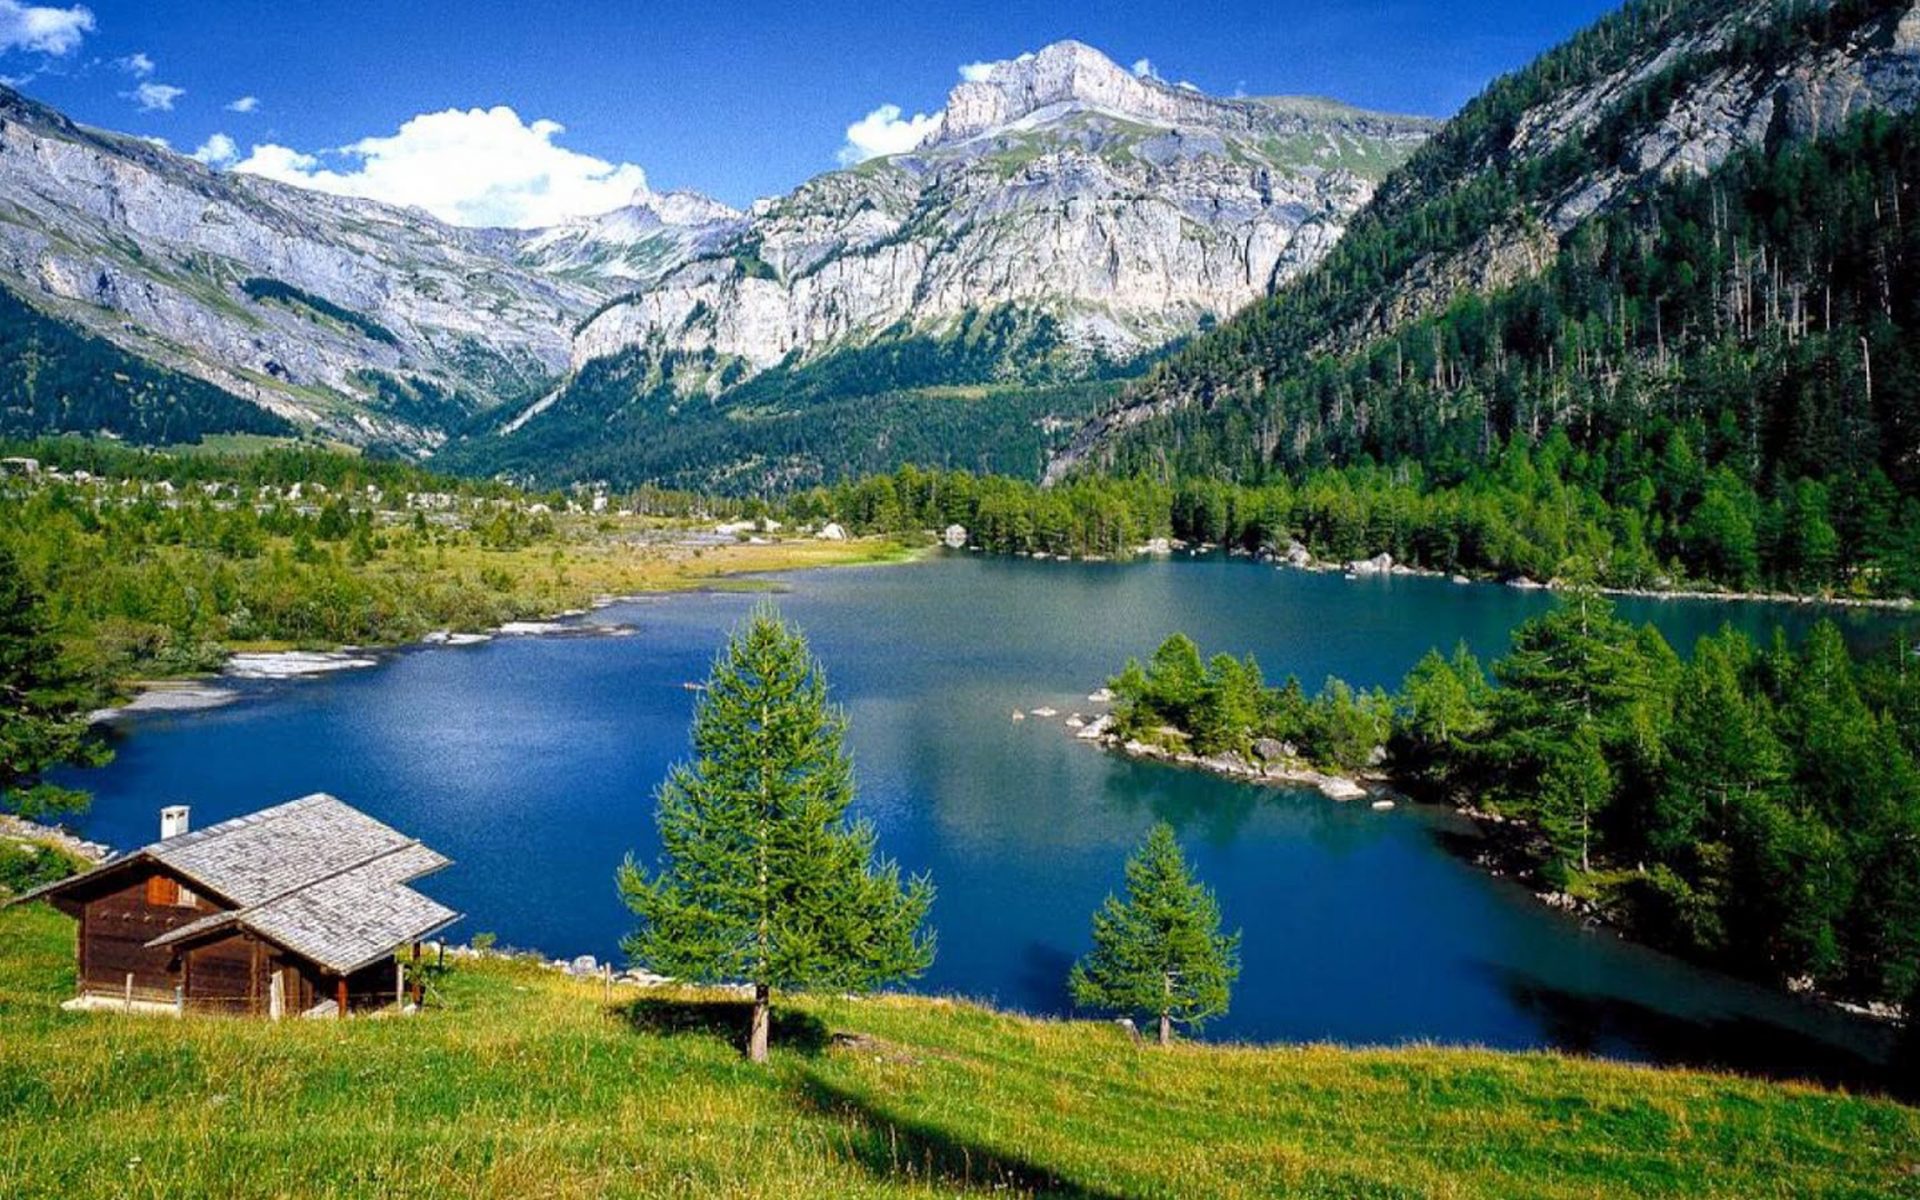 Lake House, Switzerland, Jpeg V